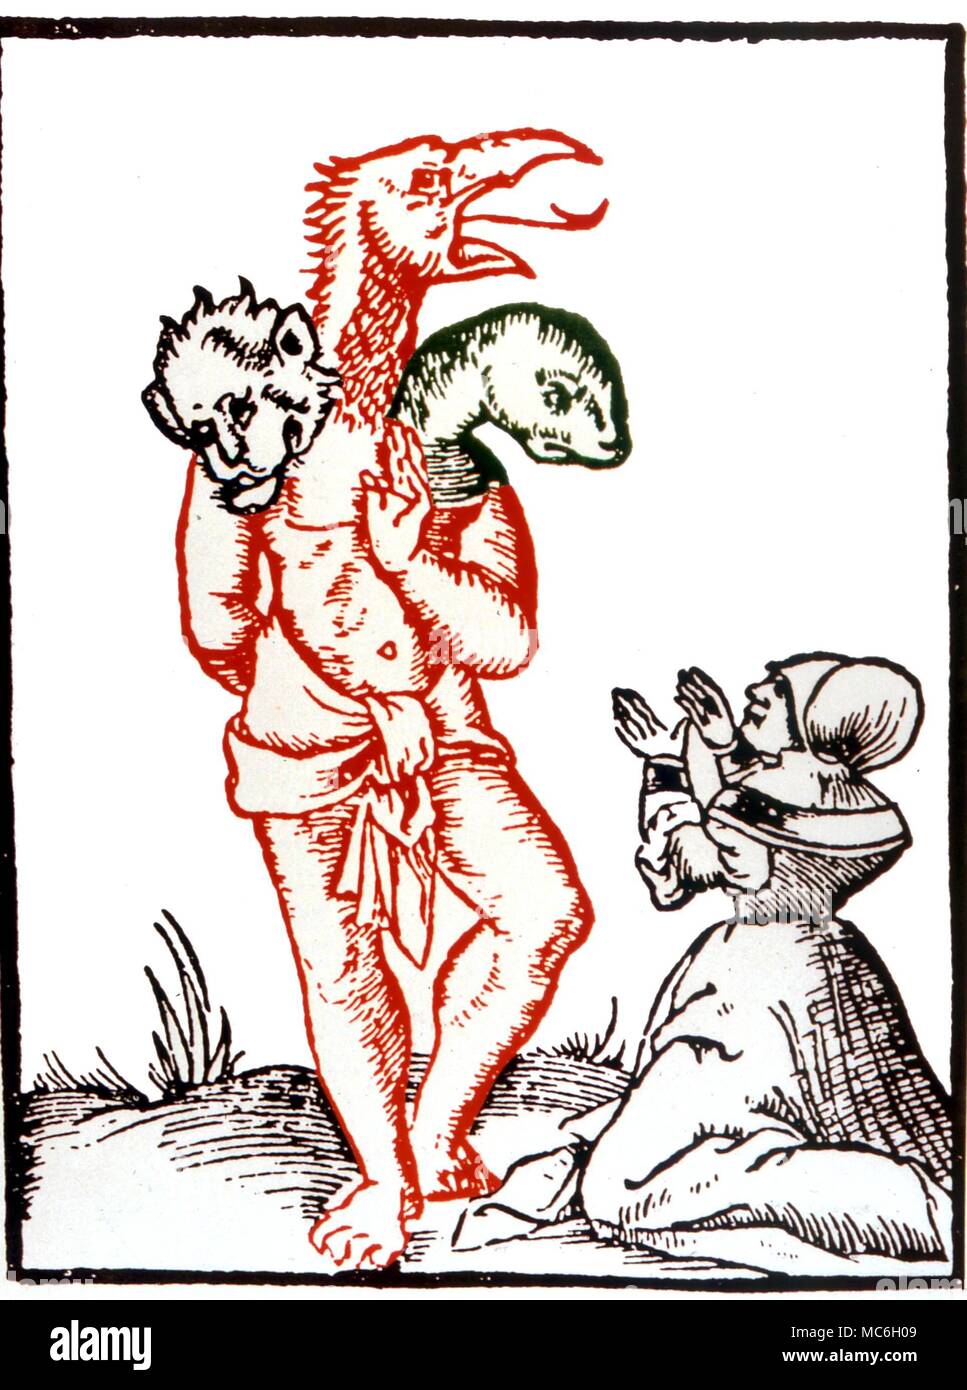 Monster ein Monster geschaffen von einer Hexe vor dem König der Franken, Marcomir. Nach Sebastian Münster "Geographia Universalis", 1544 Stockfoto